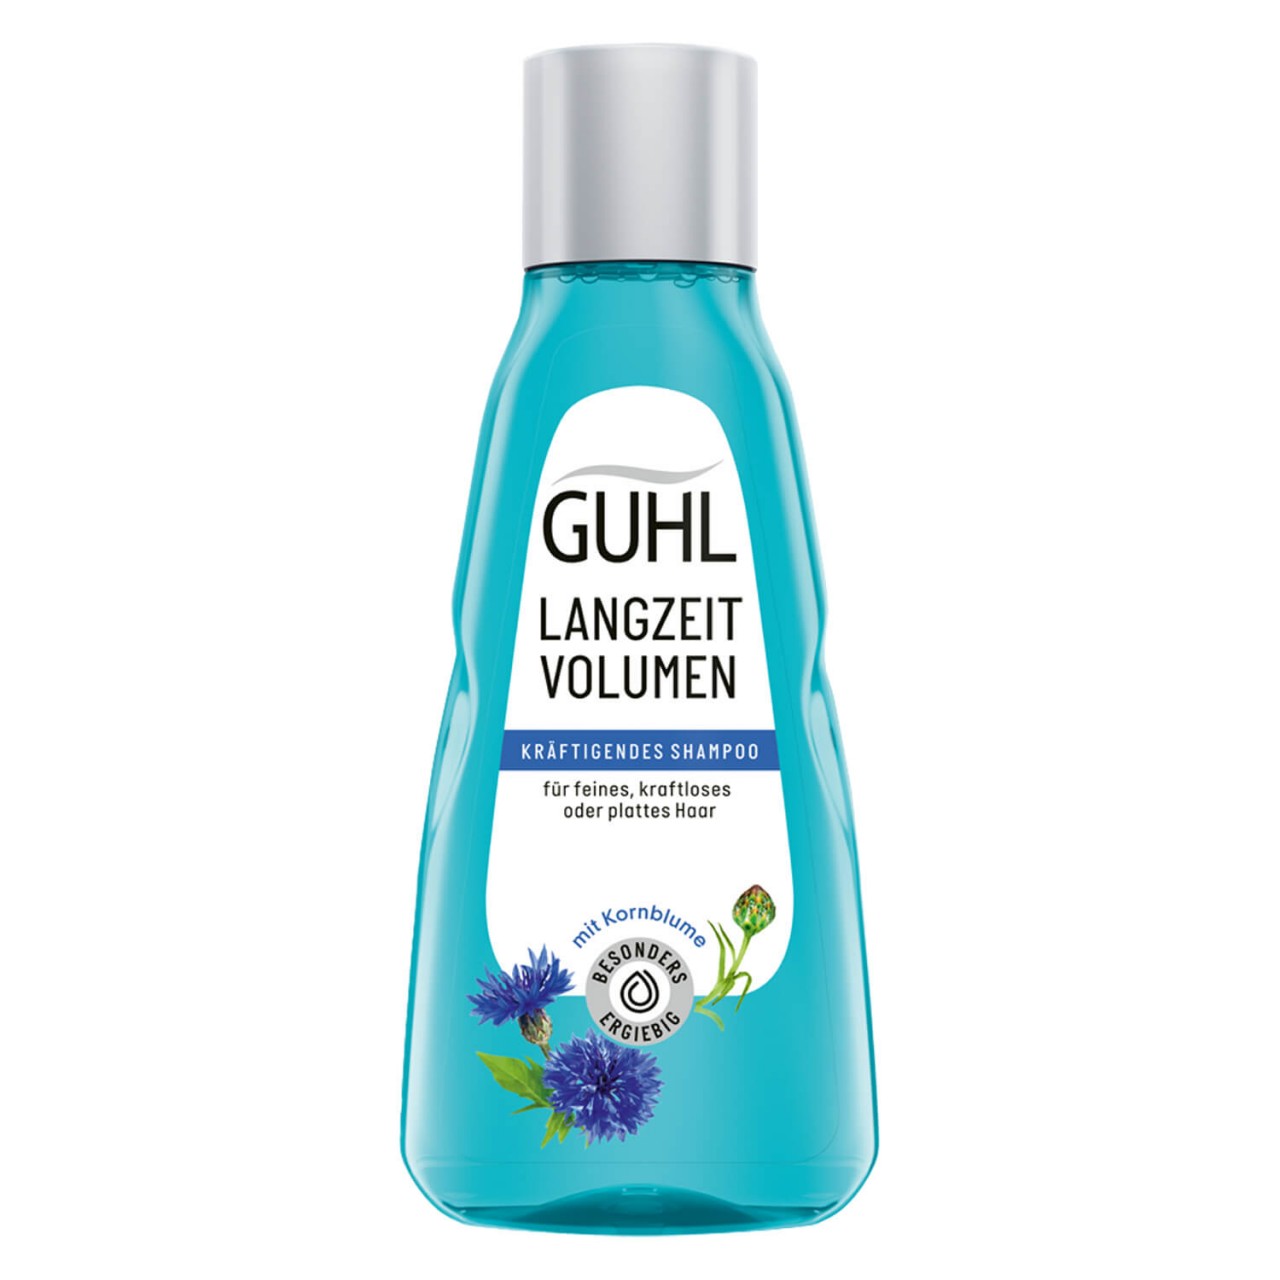 GUHL - LANGZEIT VOLUMEN Shampoo von GUHL